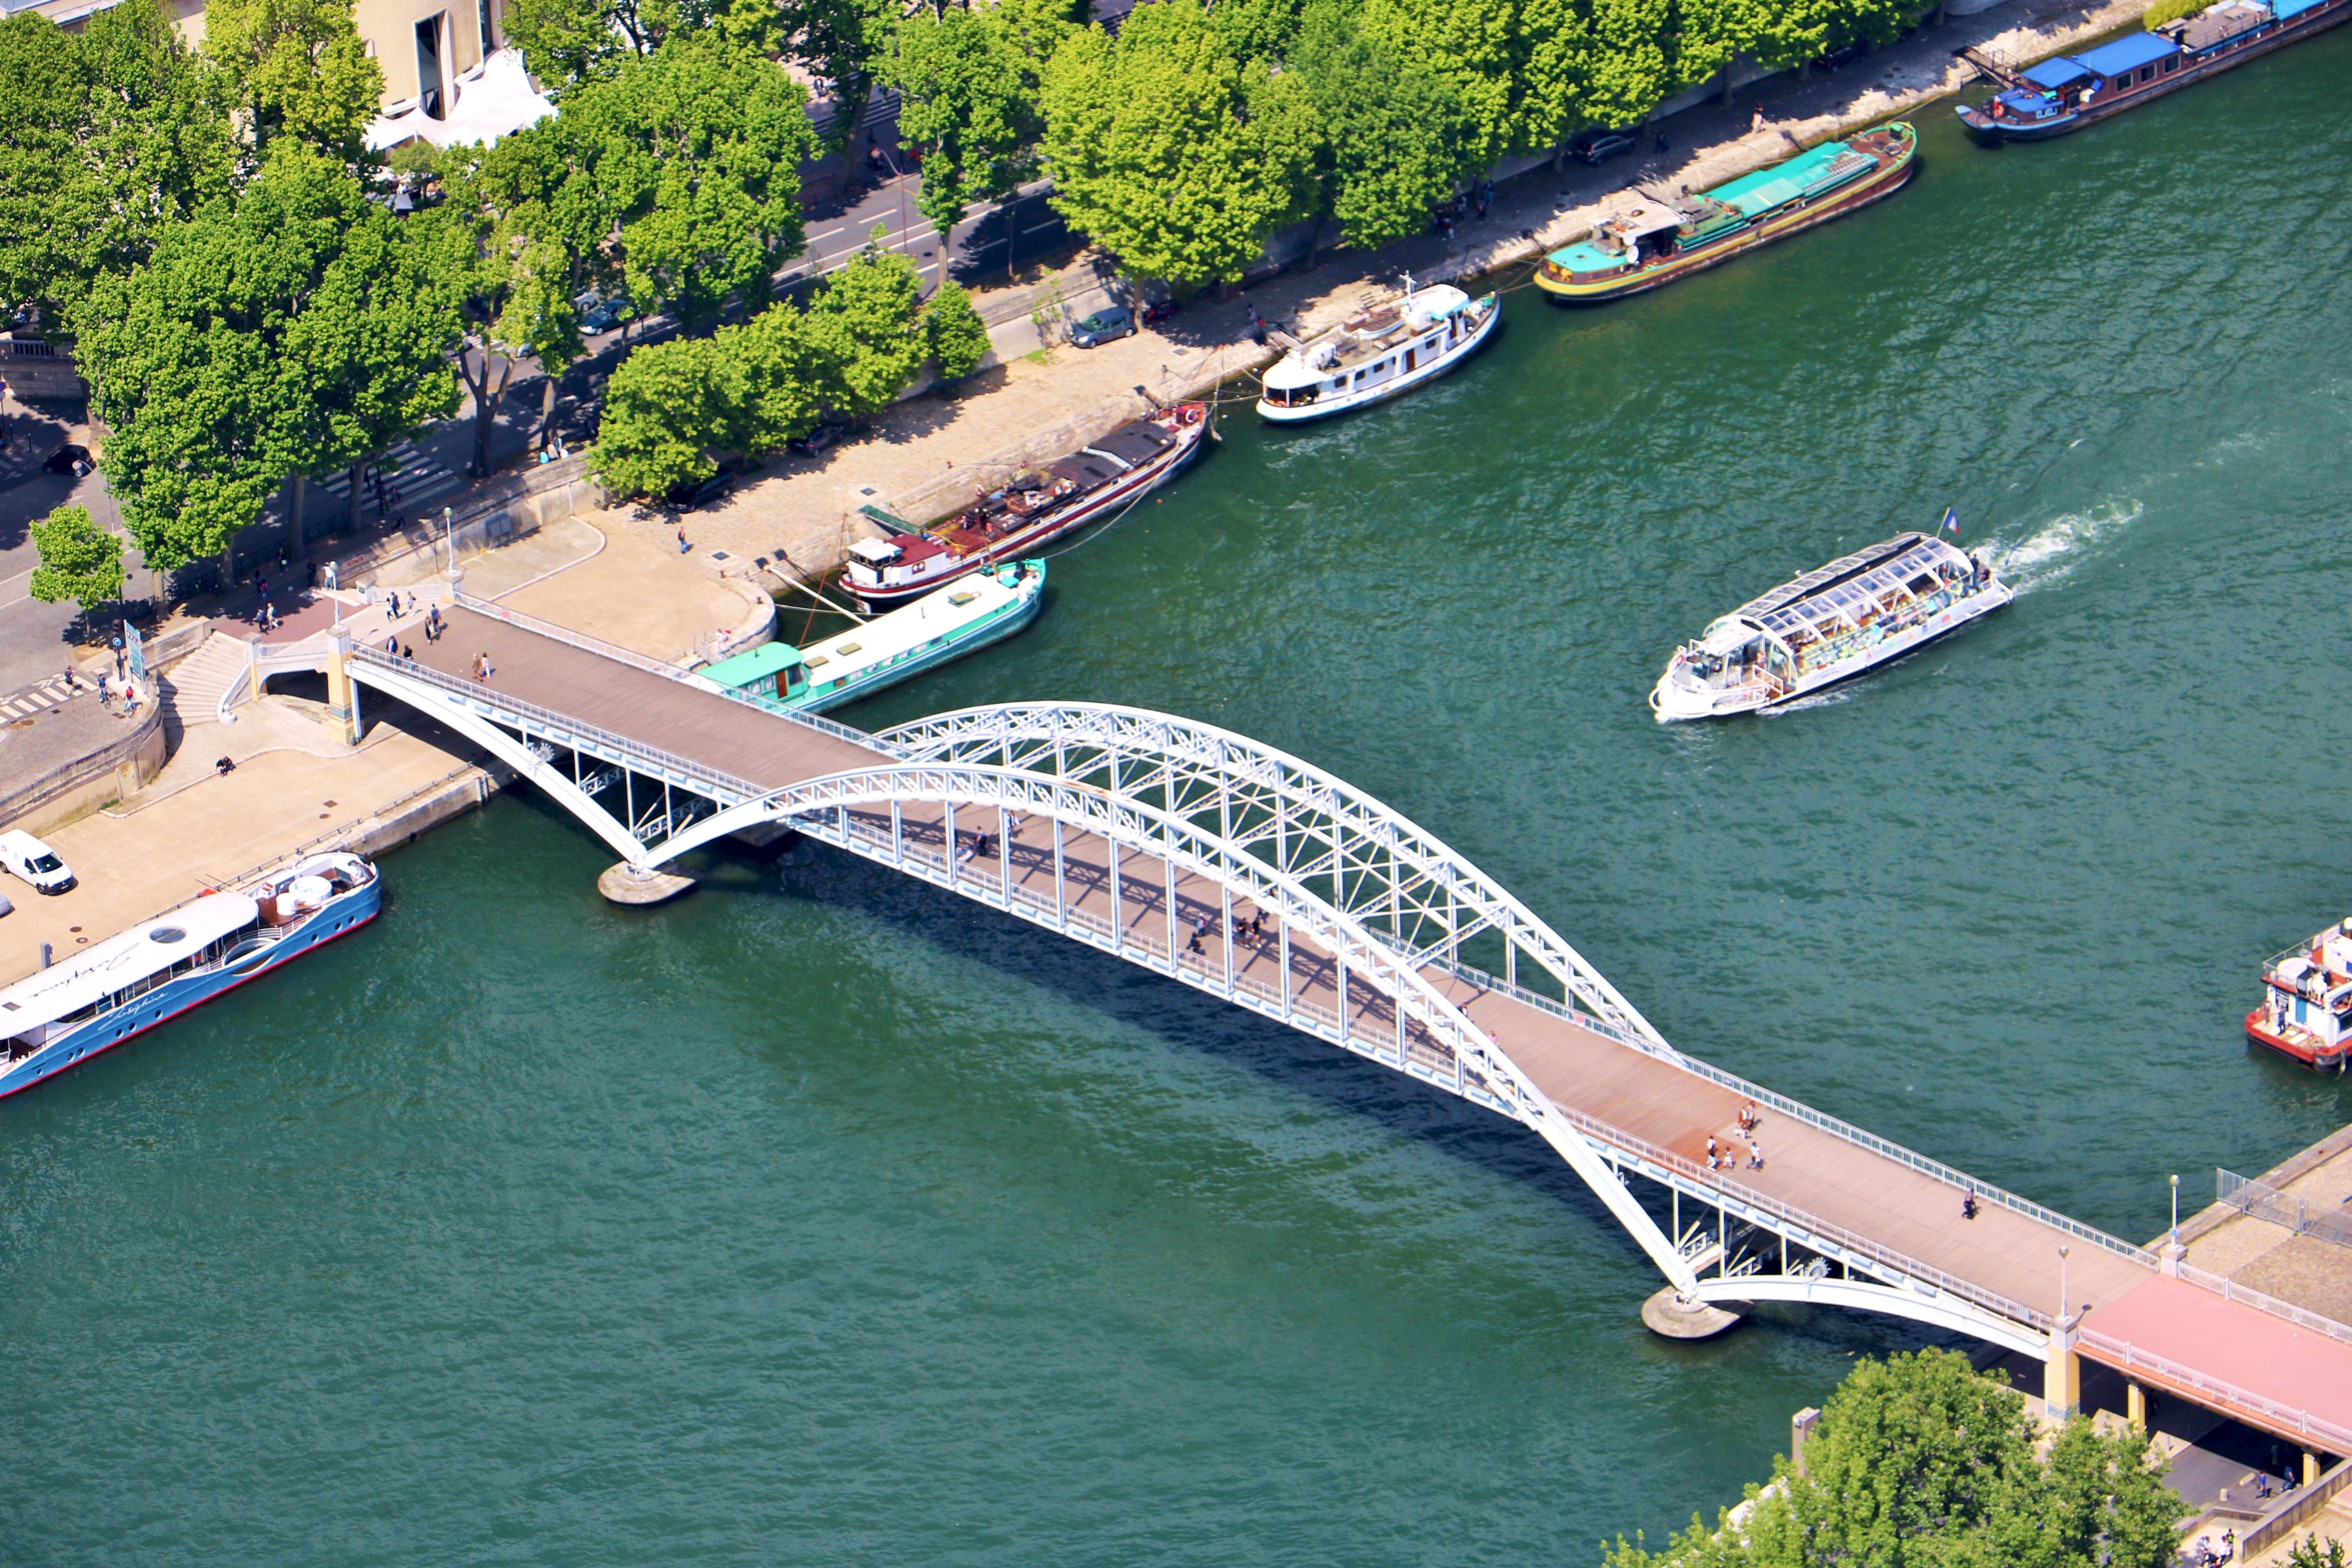 【携程攻略】巴黎塞纳河景点,乘地铁来到塞纳河边的新桥，由此起点开始漫步观赏美丽的塞纳河风光。…